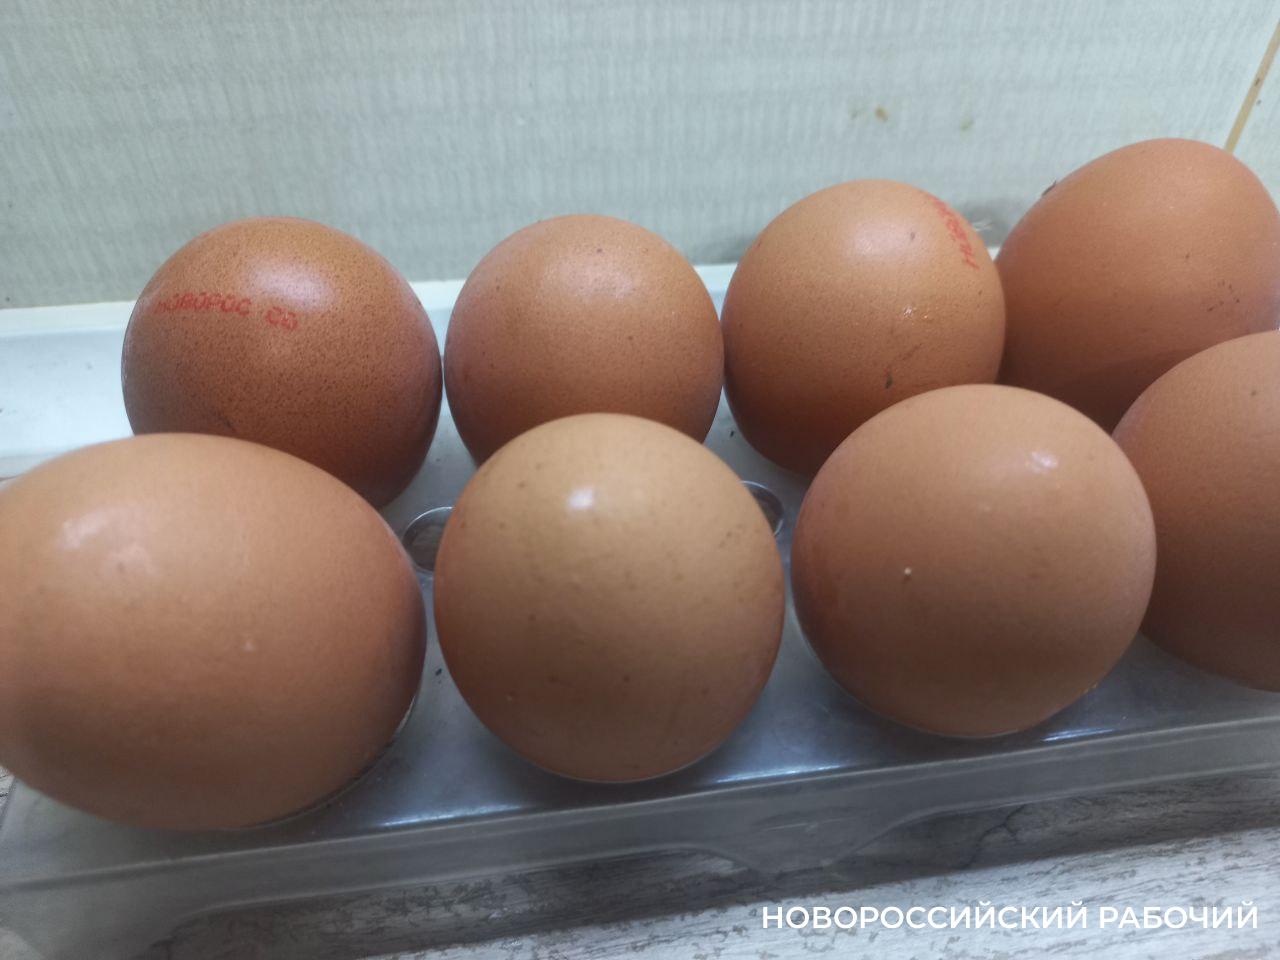 Турецкие яйца прибыли в Новороссийск